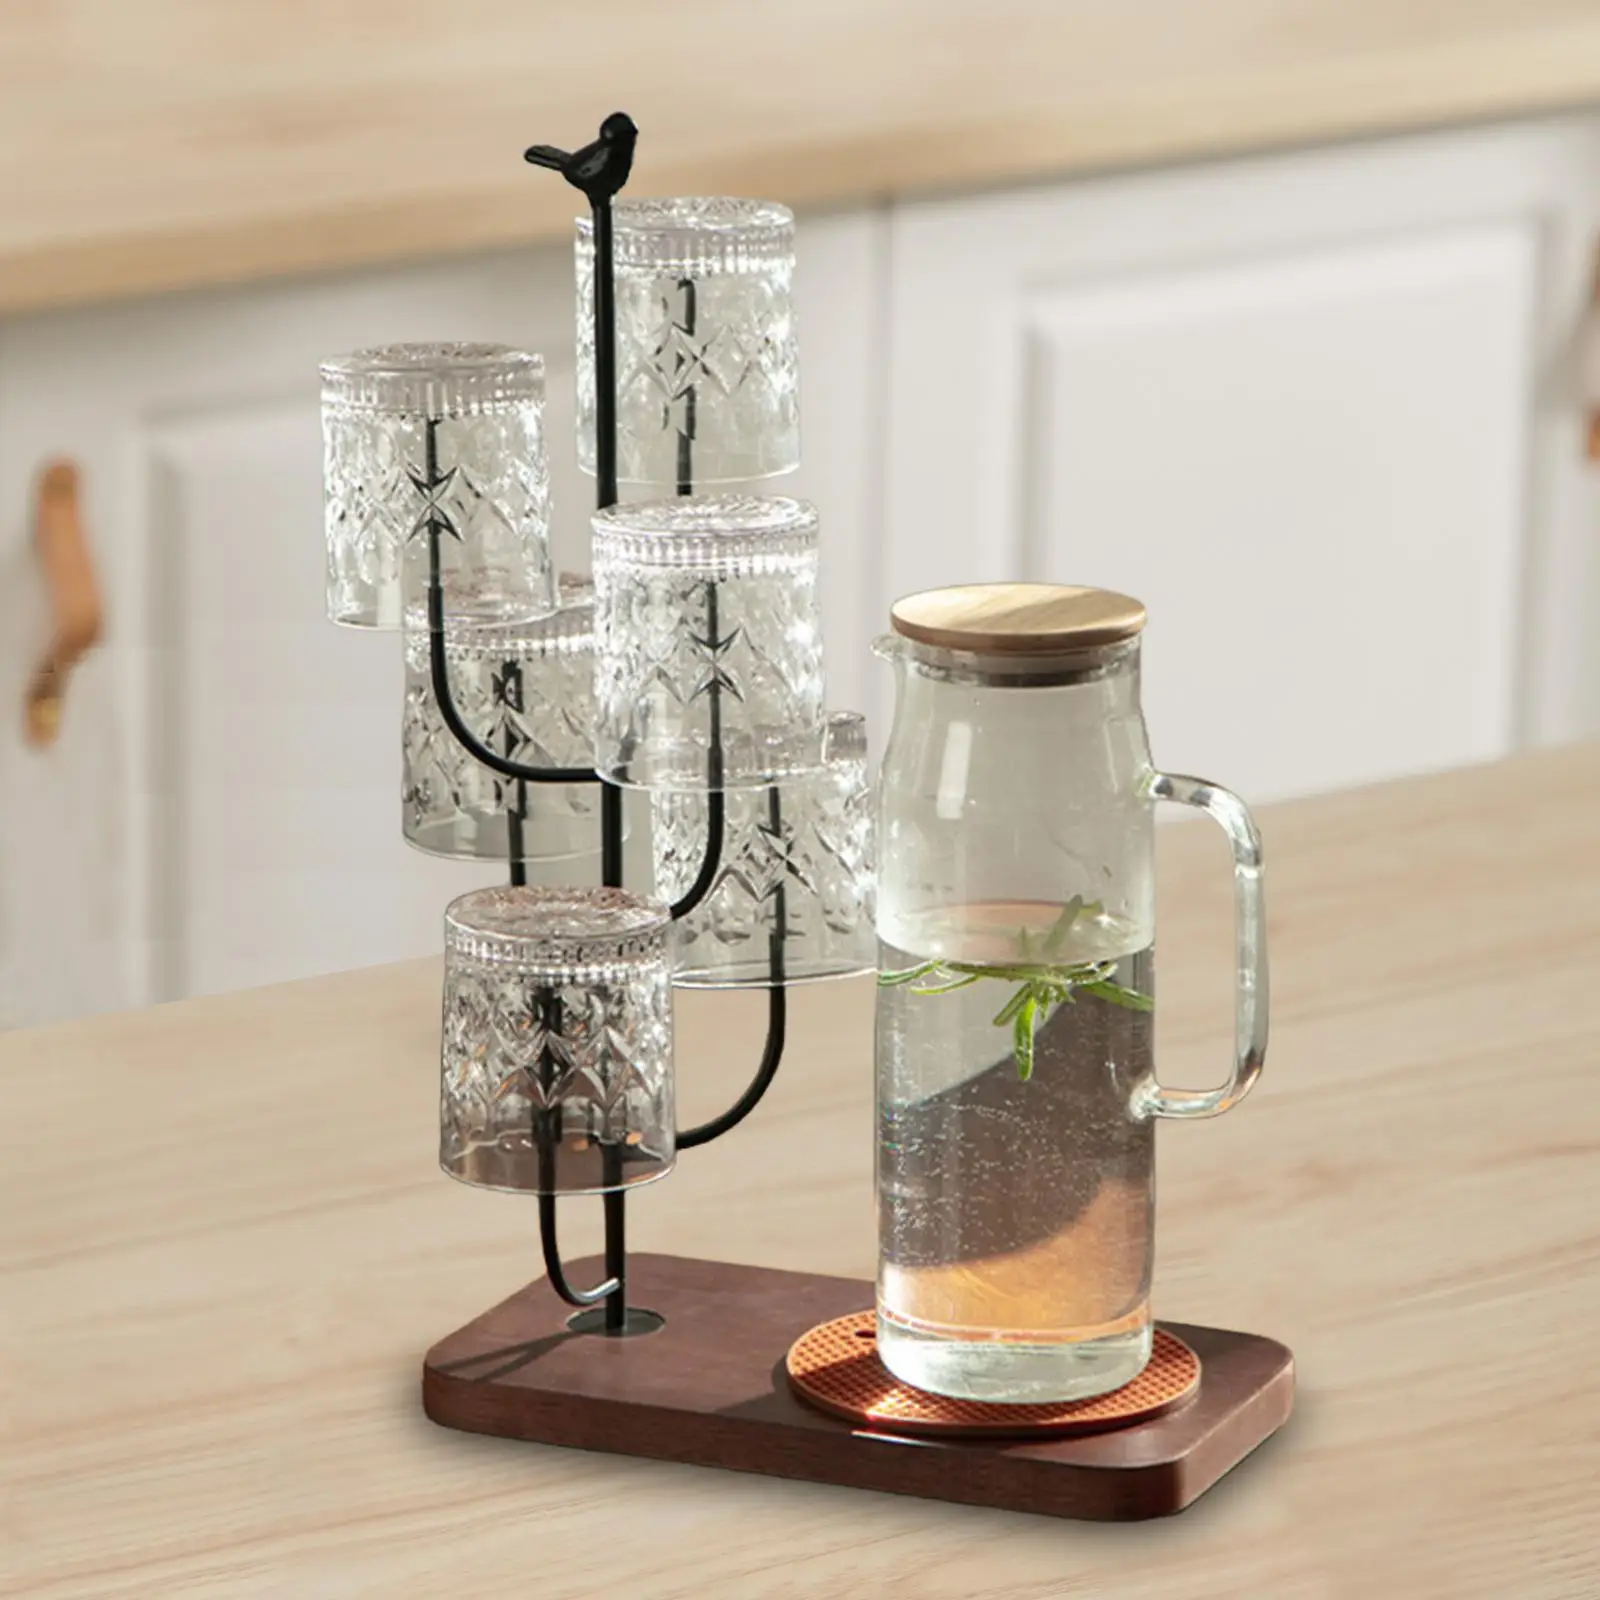 

Стеллаж для сушки стаканов с деревянной основой, подставка для хранения чашек и кружек, для шкафа, столешницы